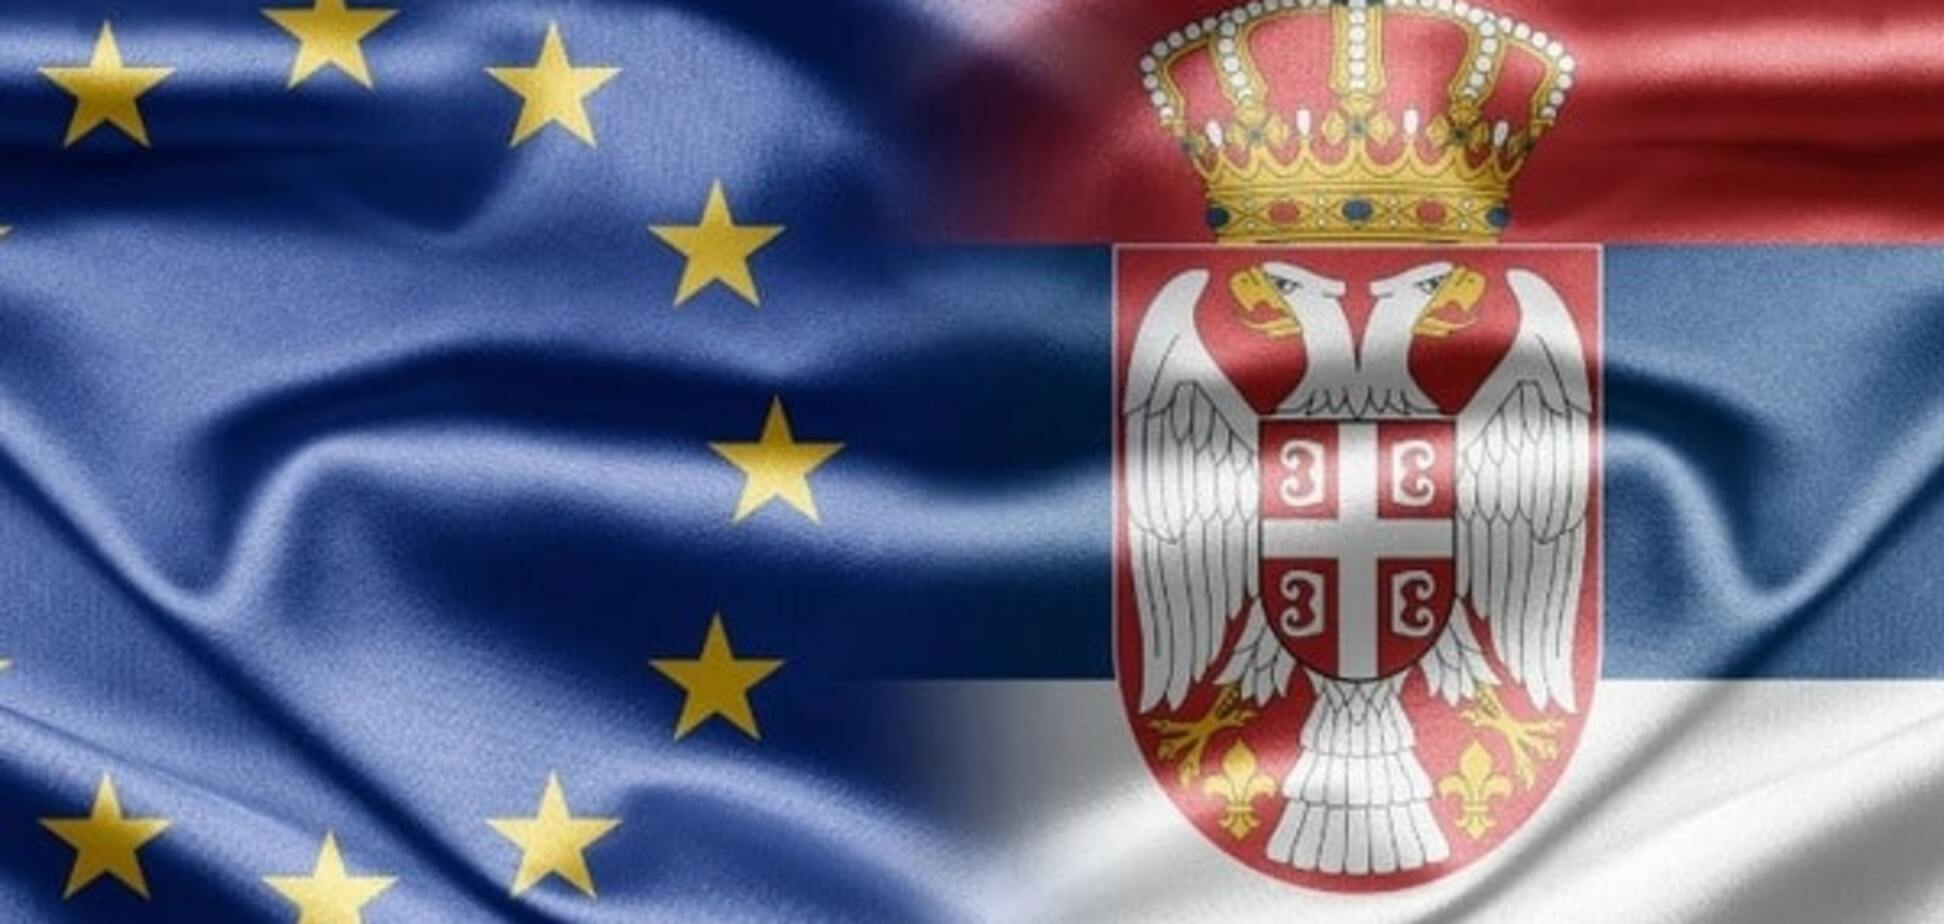 Сербия: Евросоюз утратил 'магию притяжения' для Балкан